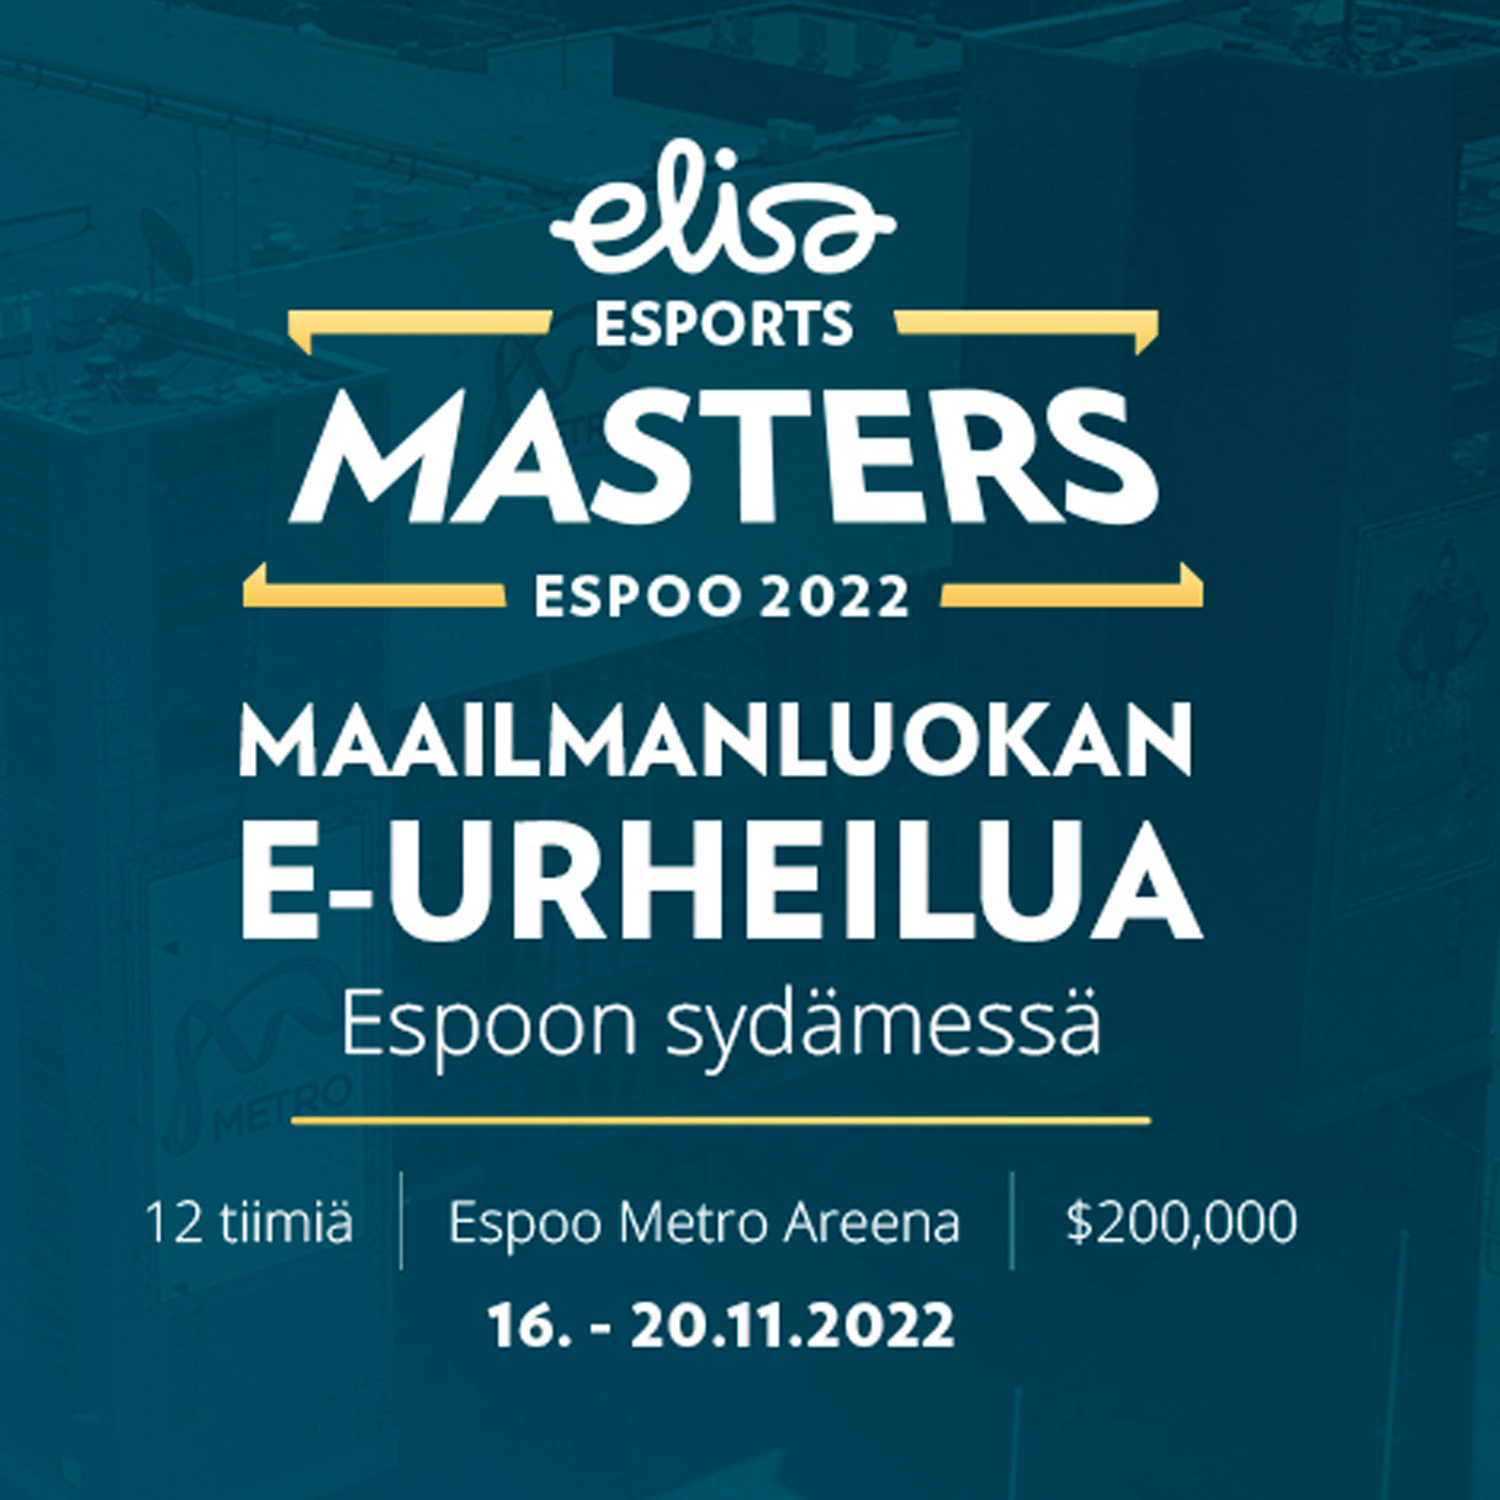 ¡Todo lo que debes de saber de la Elisa Masters Espoo 2022!